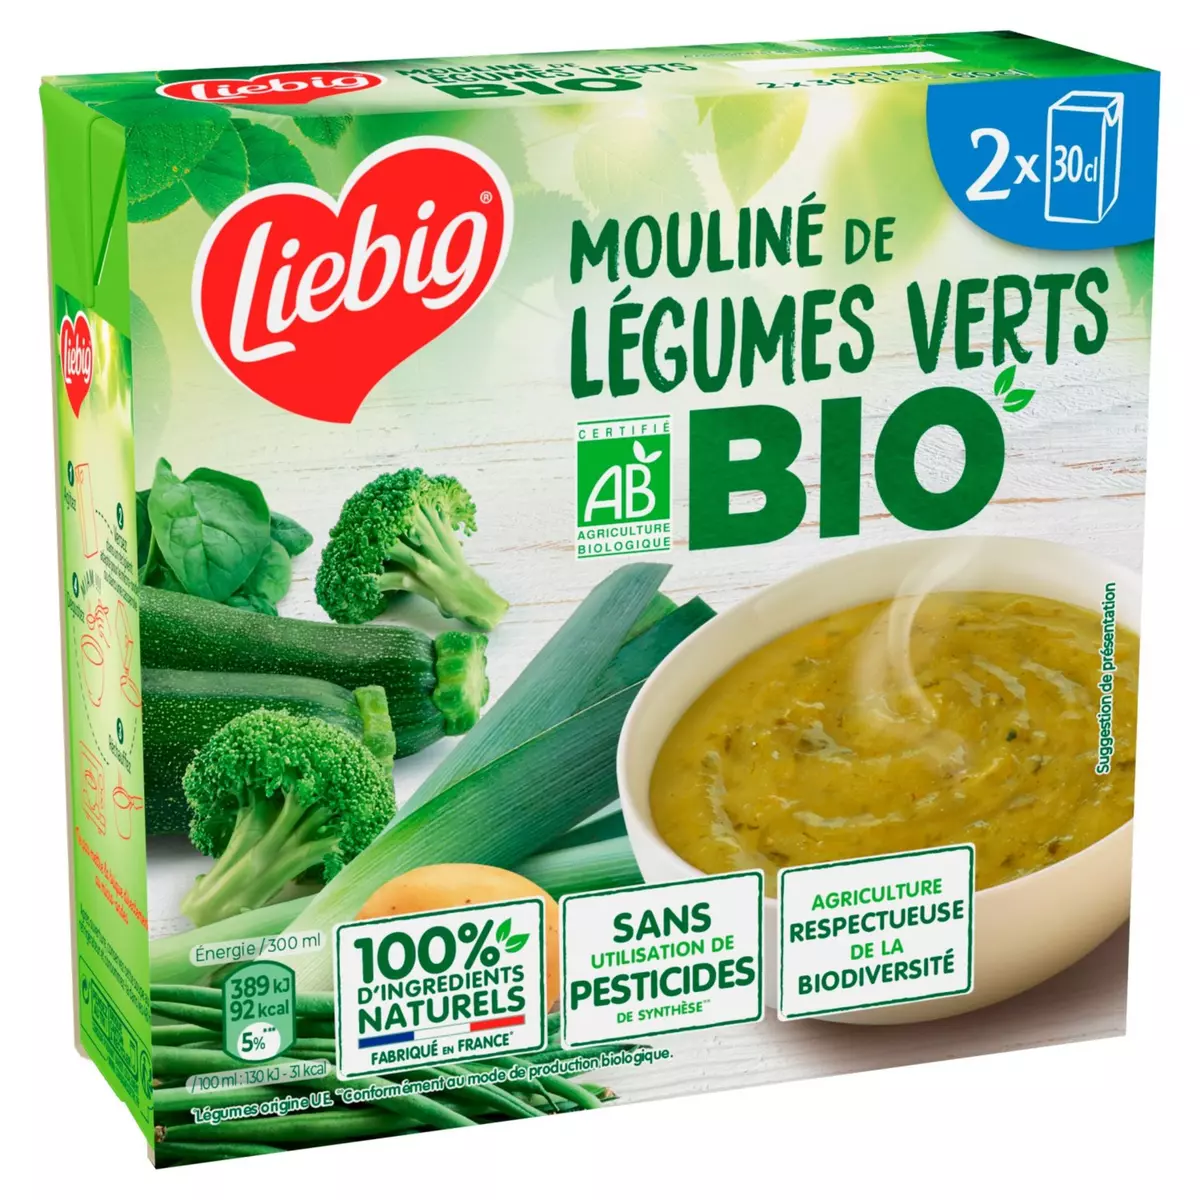 LIEBIG Soupe moulinée légumes verts bio 2 personnes 2x30cl